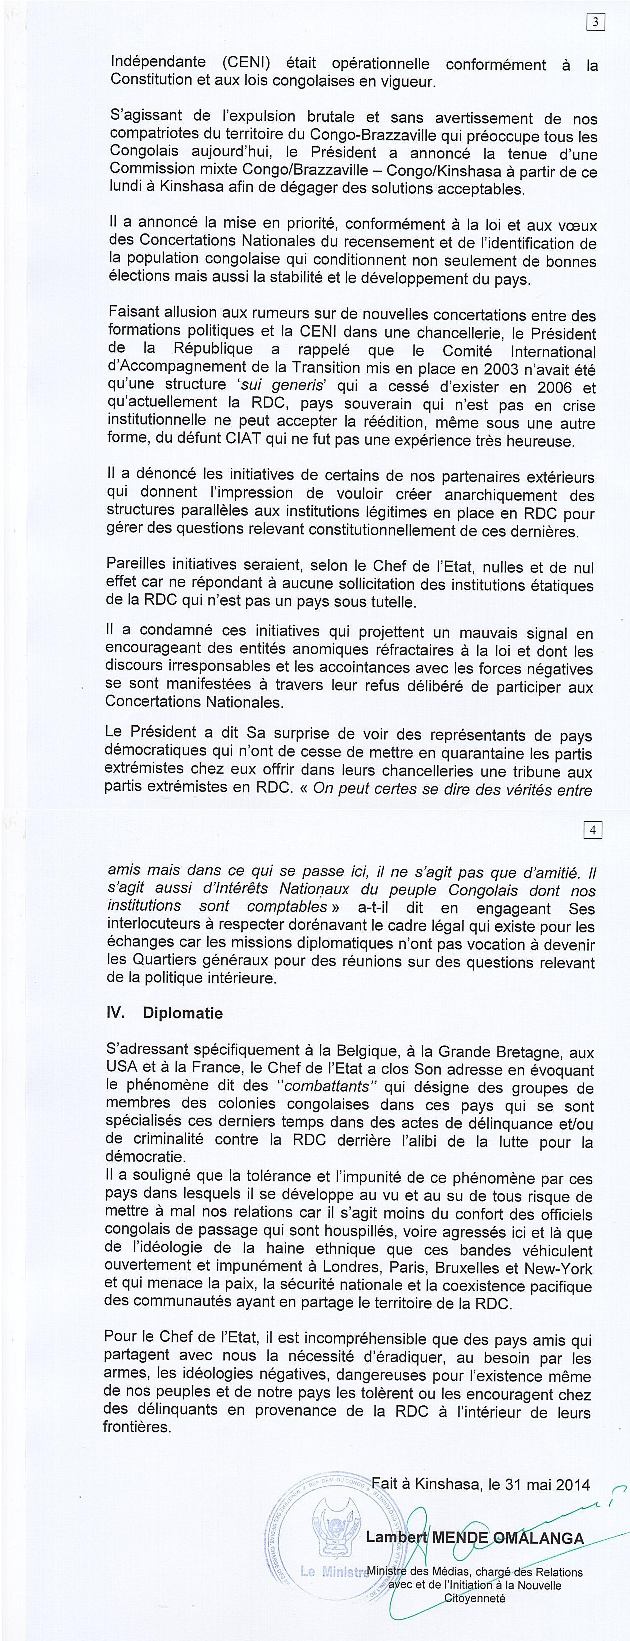 KABILA CONVOQUE SANS PREAVIS LE CORPS DIPLOMATIQUE AU PALAIS DE LA NATION Communique-kabila-pag-3-et-4